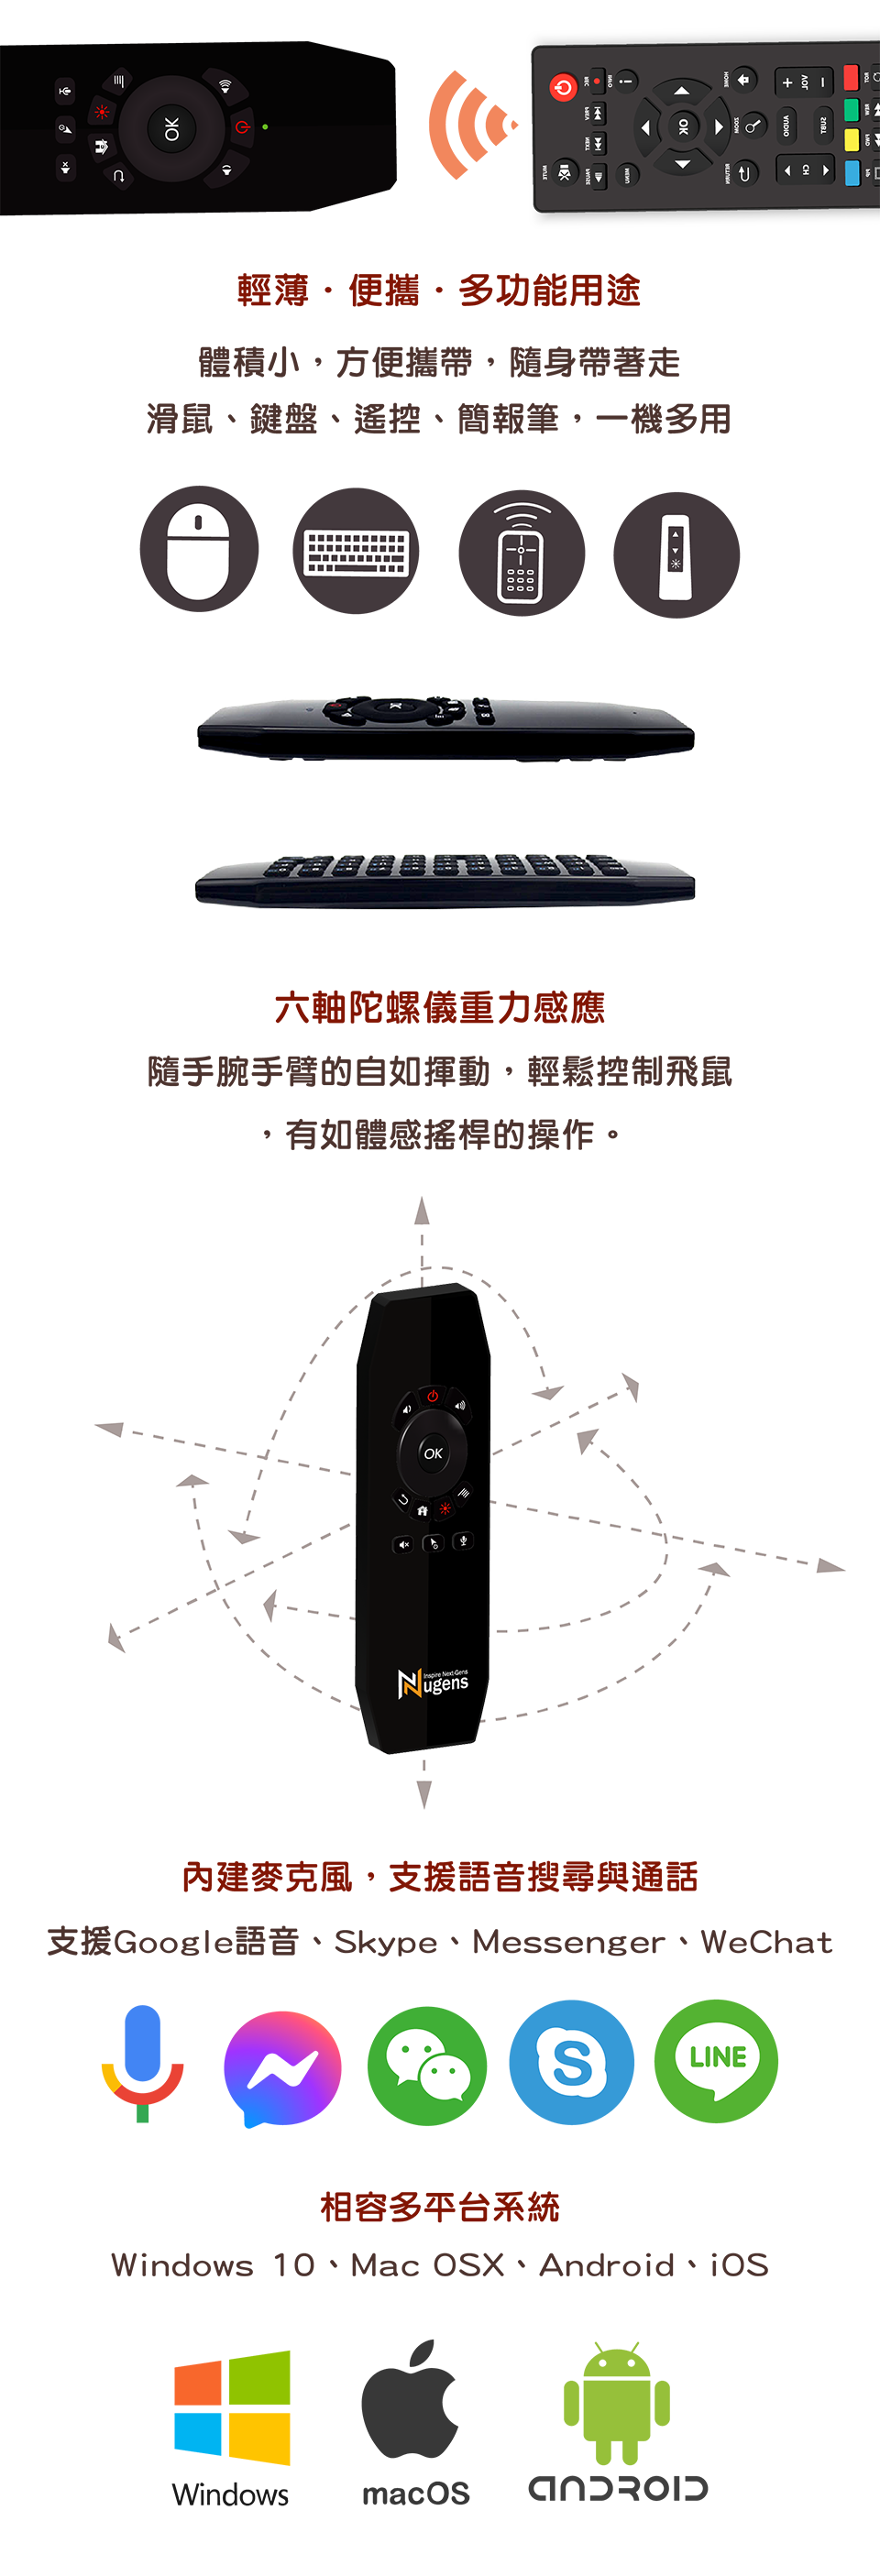 無線語音飛鼠-輕薄便攜多功能用途、相容多平台系統、內建麥克風支援語音搜尋與通話-Mobile